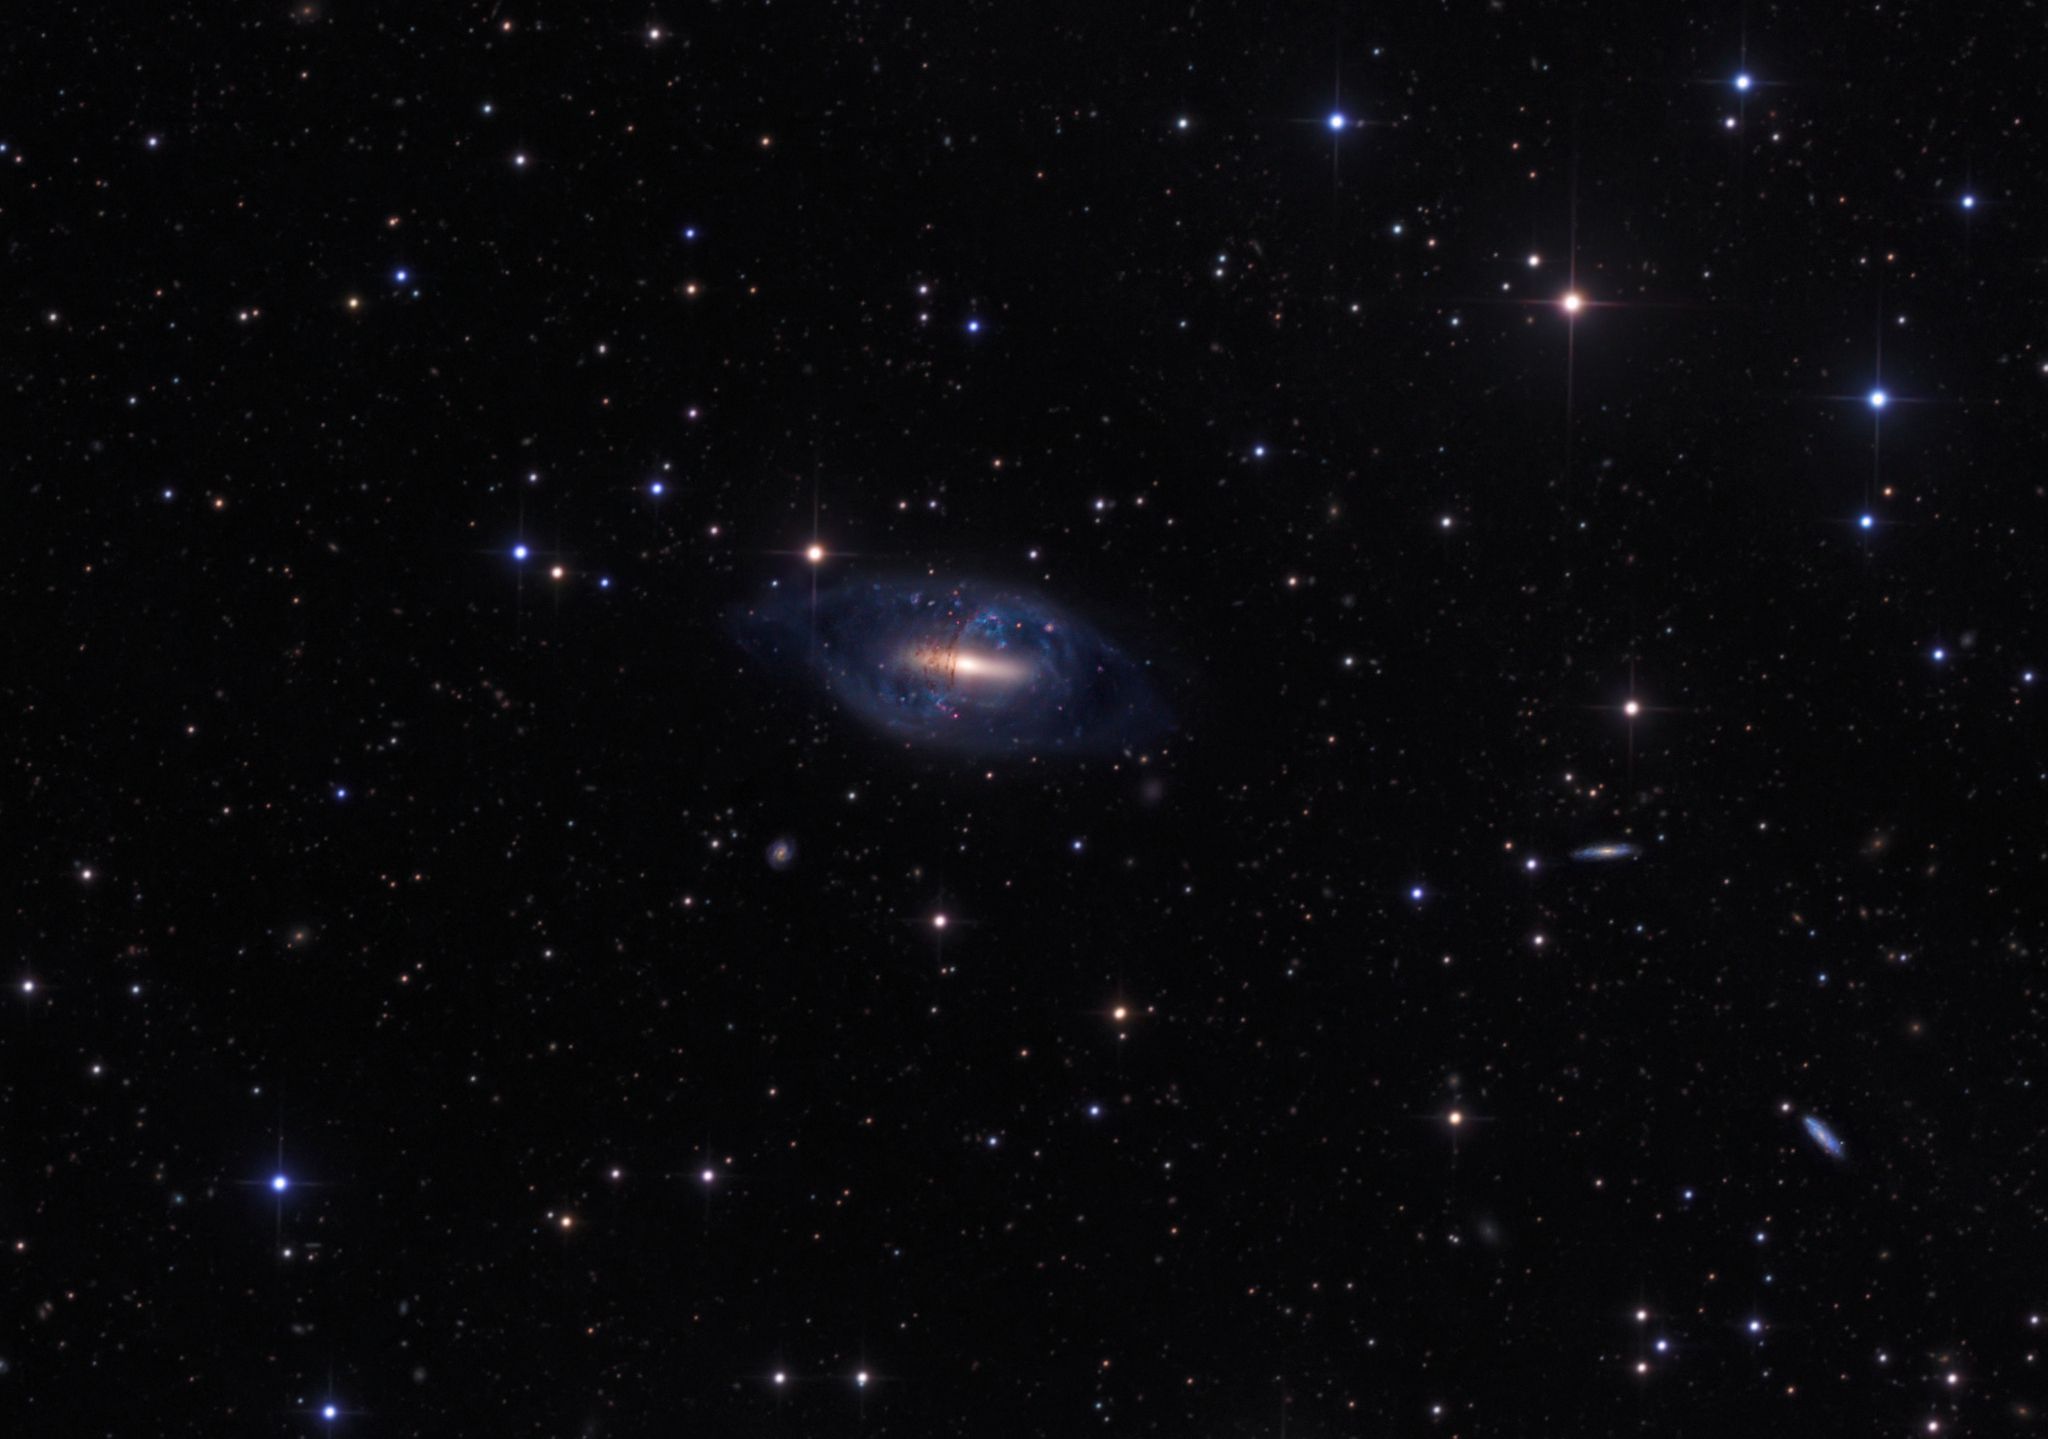  Polar Ring Galaxy NGC 2685 